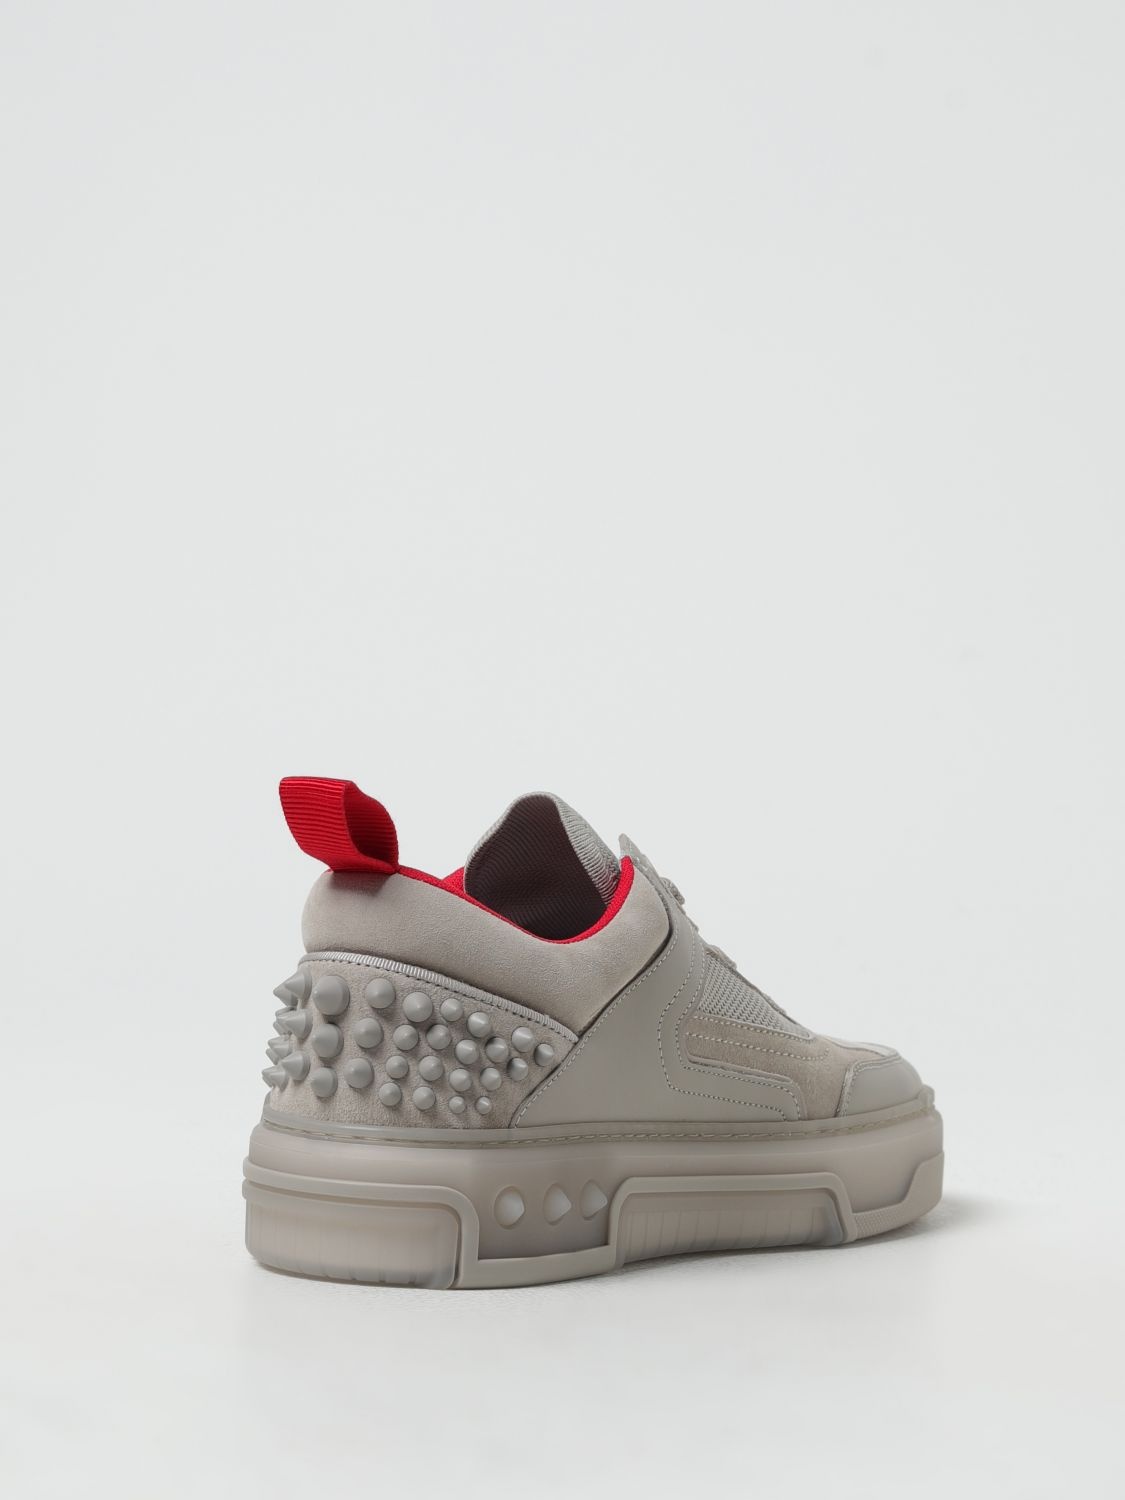 Christian Louboutin Sneakers Woman Grey Woman - 3